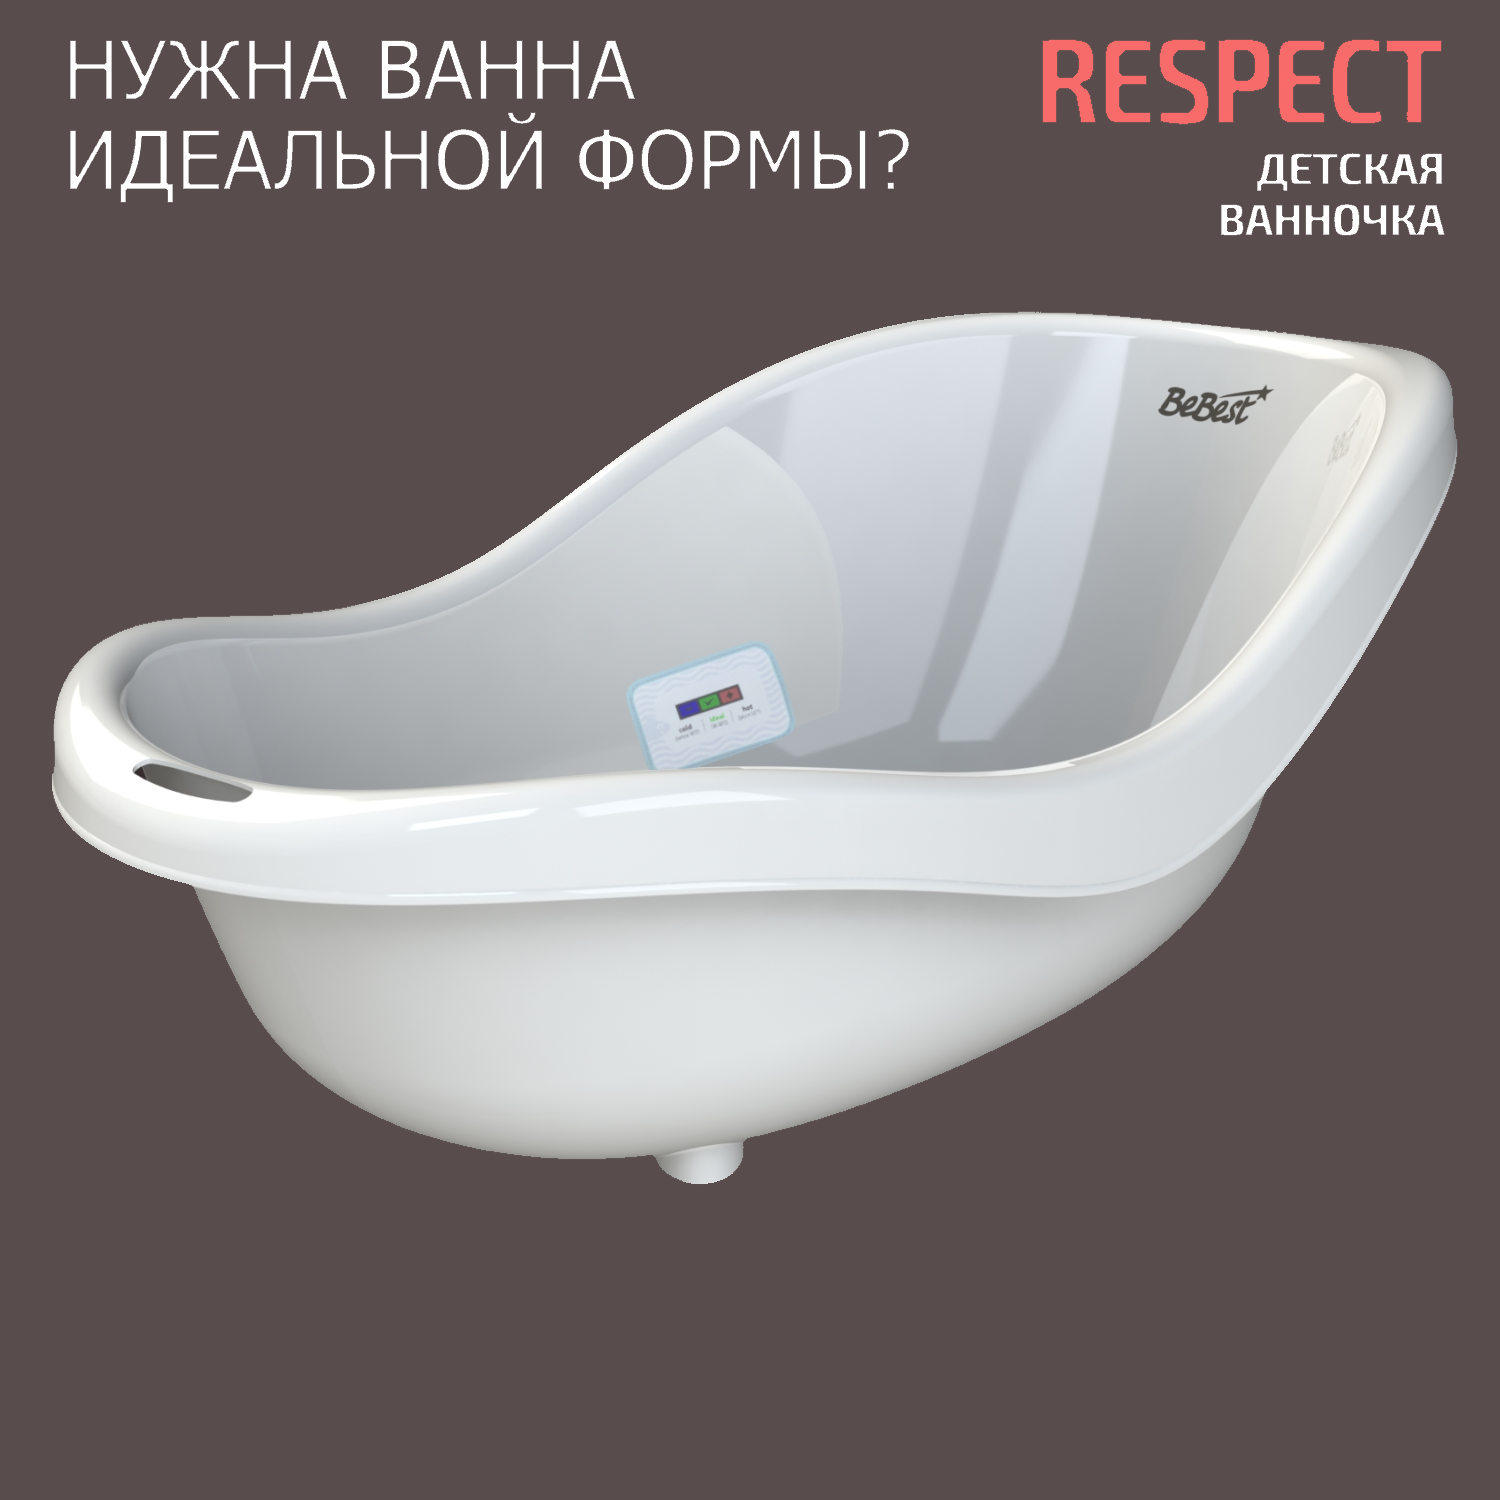 Ванночка для купания новорожденных BeBest Respect с термометром, белый